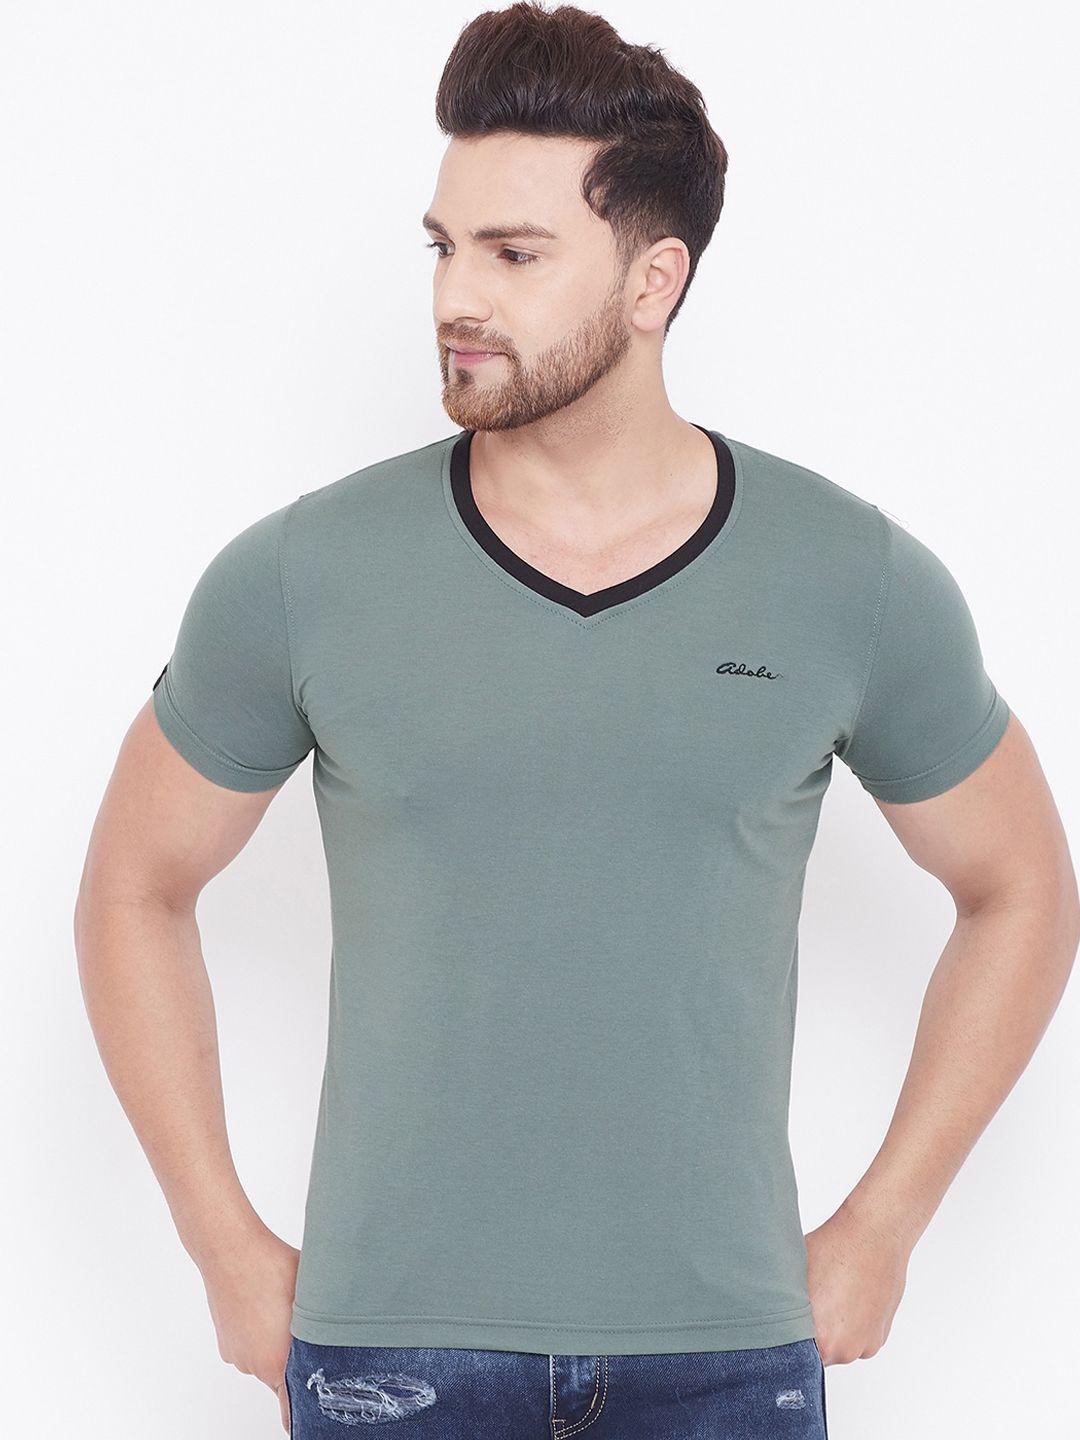 adobe-men-green-solid-v-neck-t-shirt